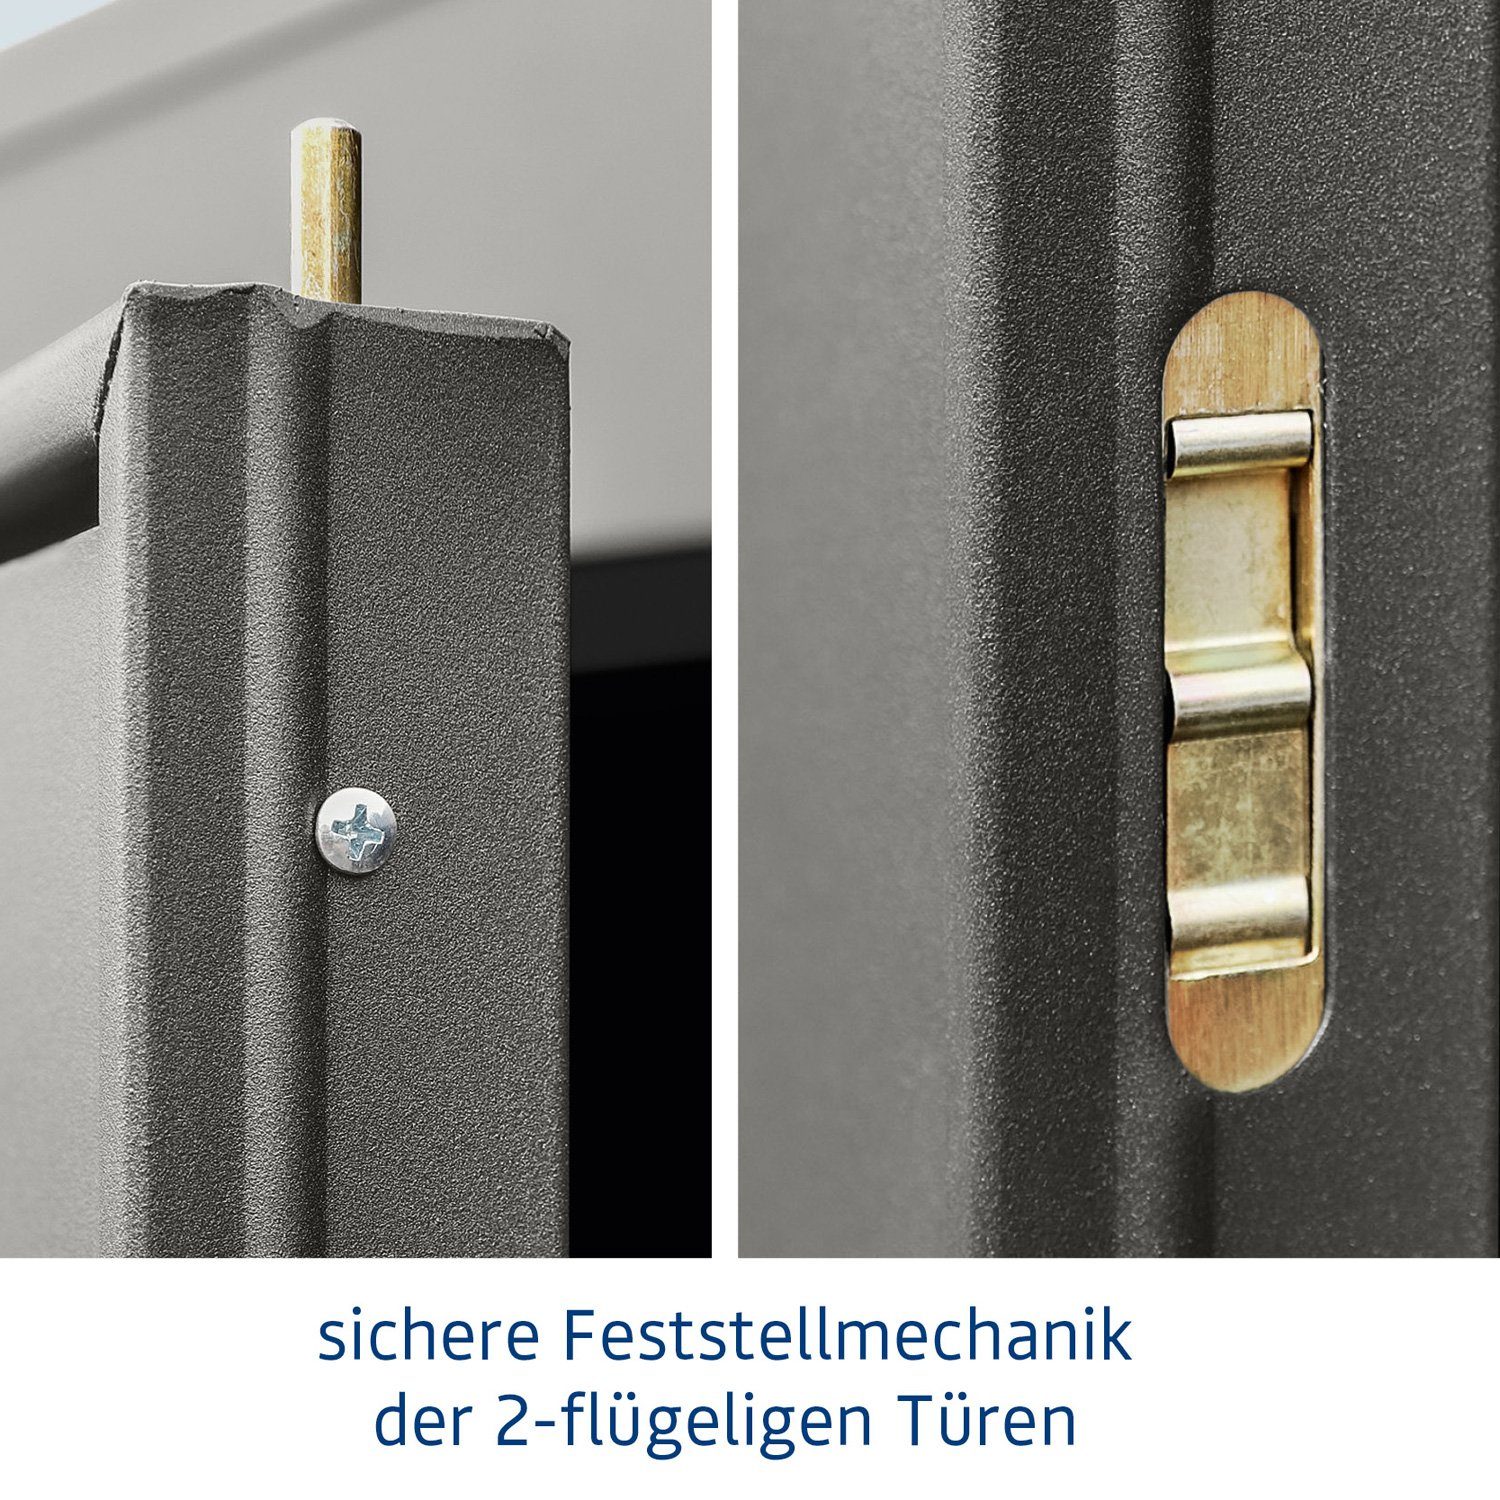 taubenblau Ecostar Pultdach Tür Typ Hörmann mit Gerätehaus 3, Metall-Gerätehaus Elegant 2-flügelige